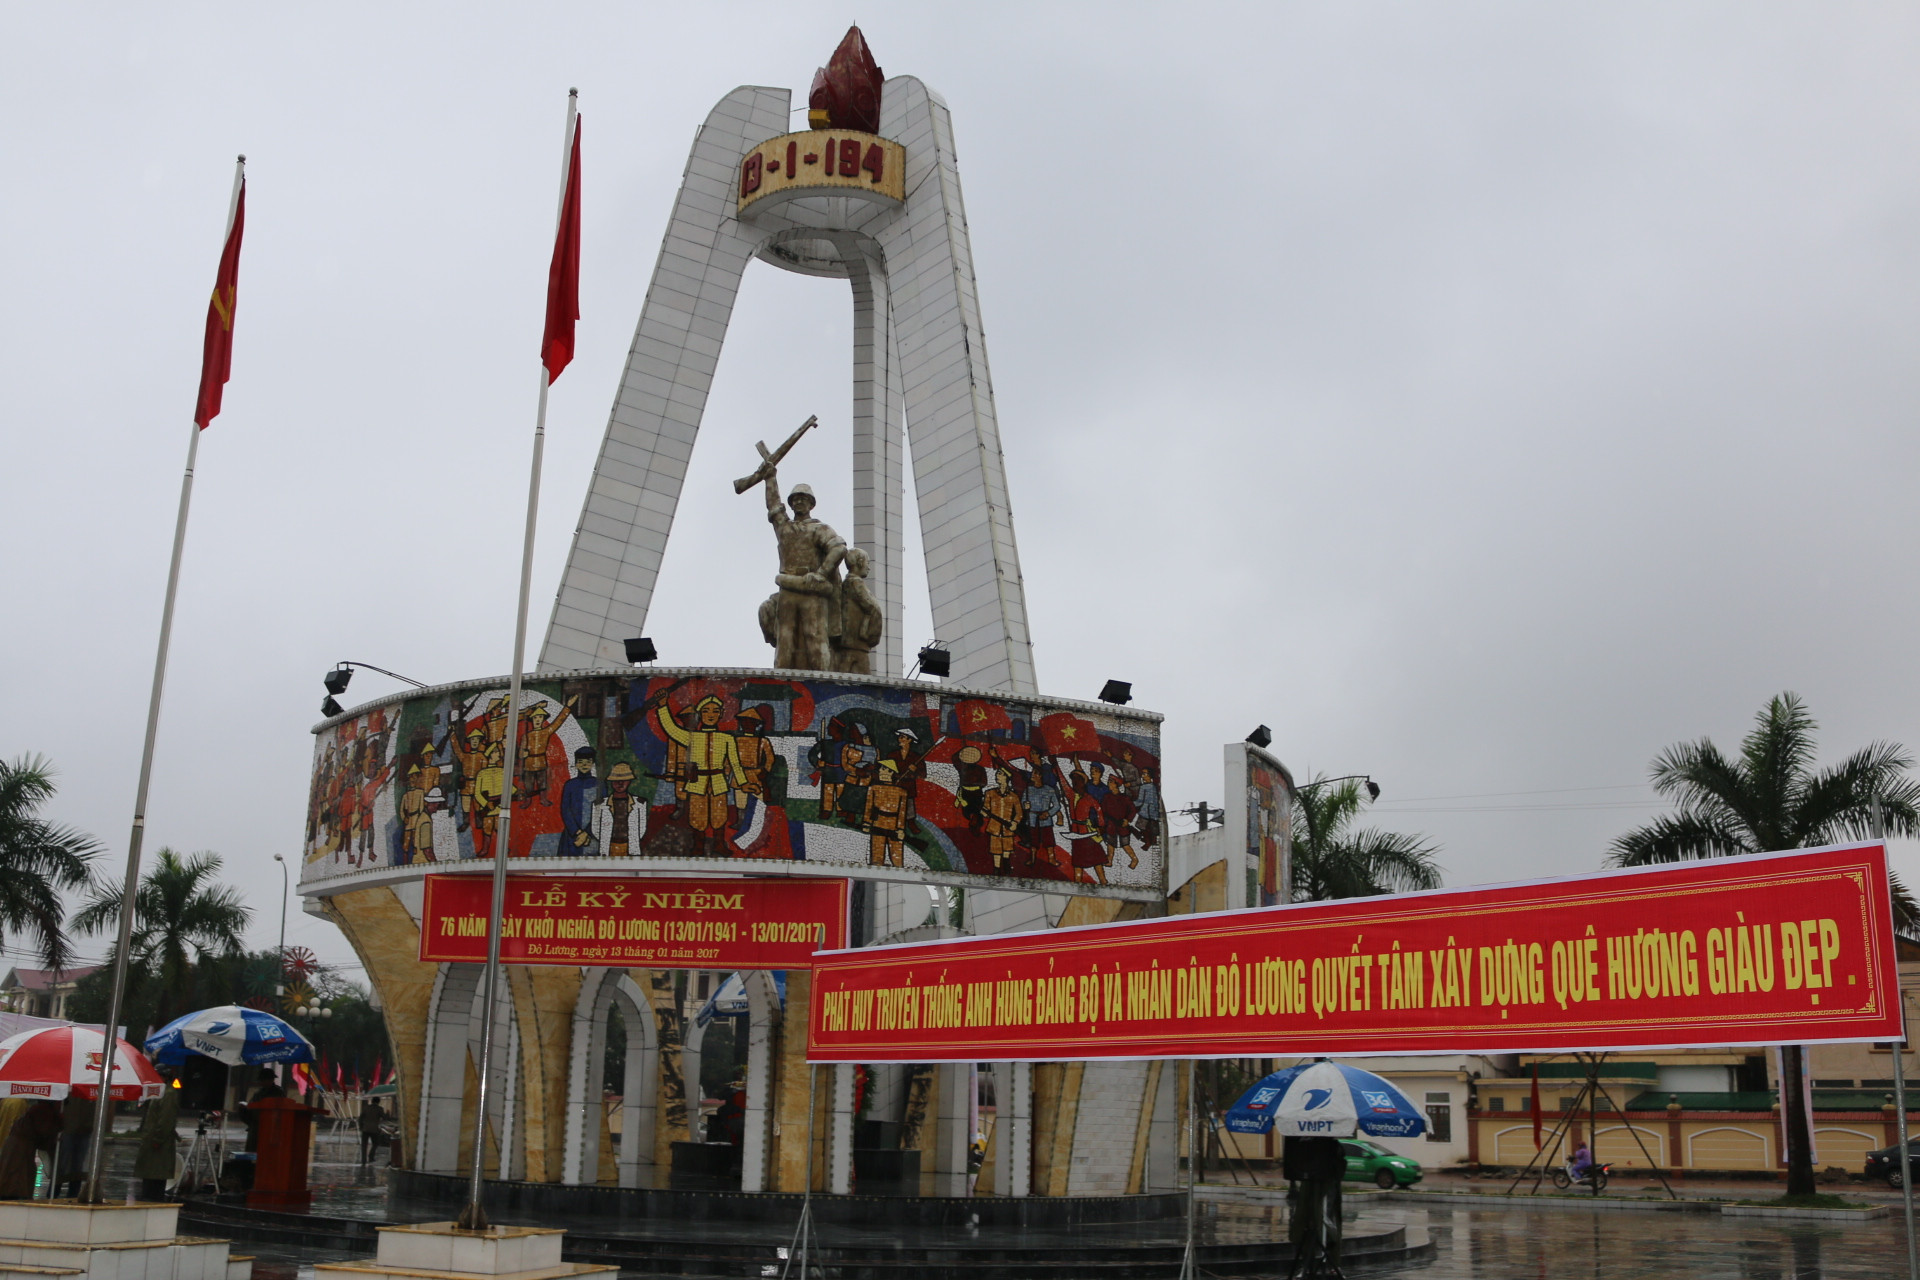 ượng đài binh biến Đô Lương nằm ngay trung tâm Thị trấn Đô Lương - là biểu tượng cách mạng - nơi giáo dục truyền thống yêu nước cho thế hệ trẻ. Ảnh: Hưu Hoàn